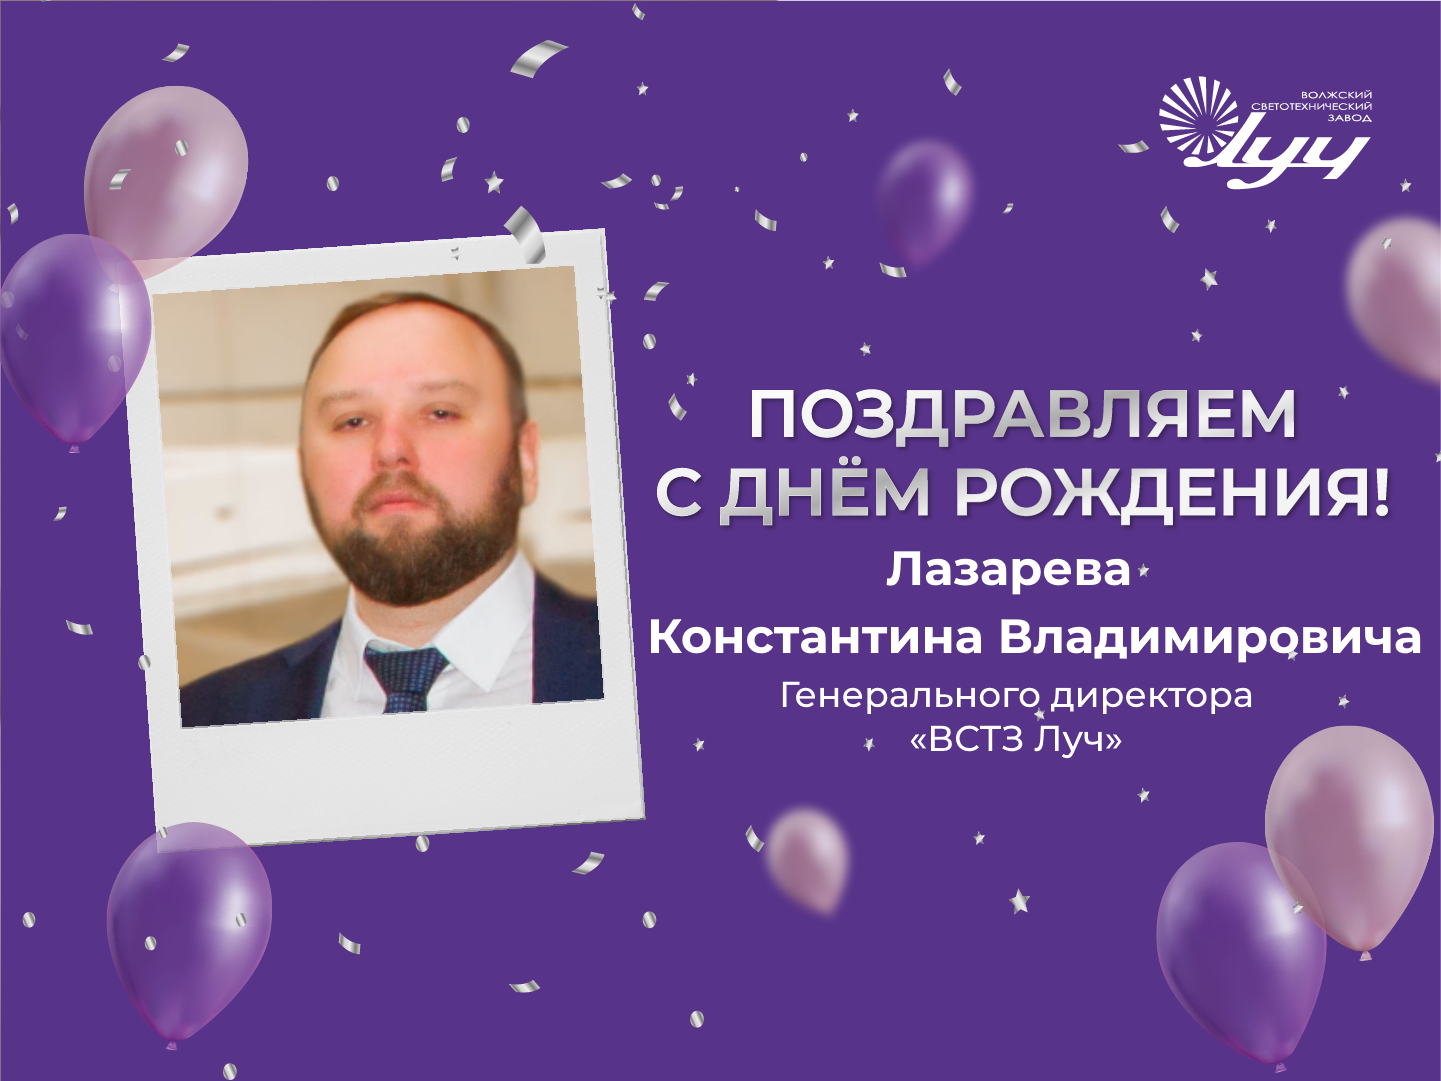 Генеральный директор ВСТЗ Луч Лазарев К.В. - с днем рождения